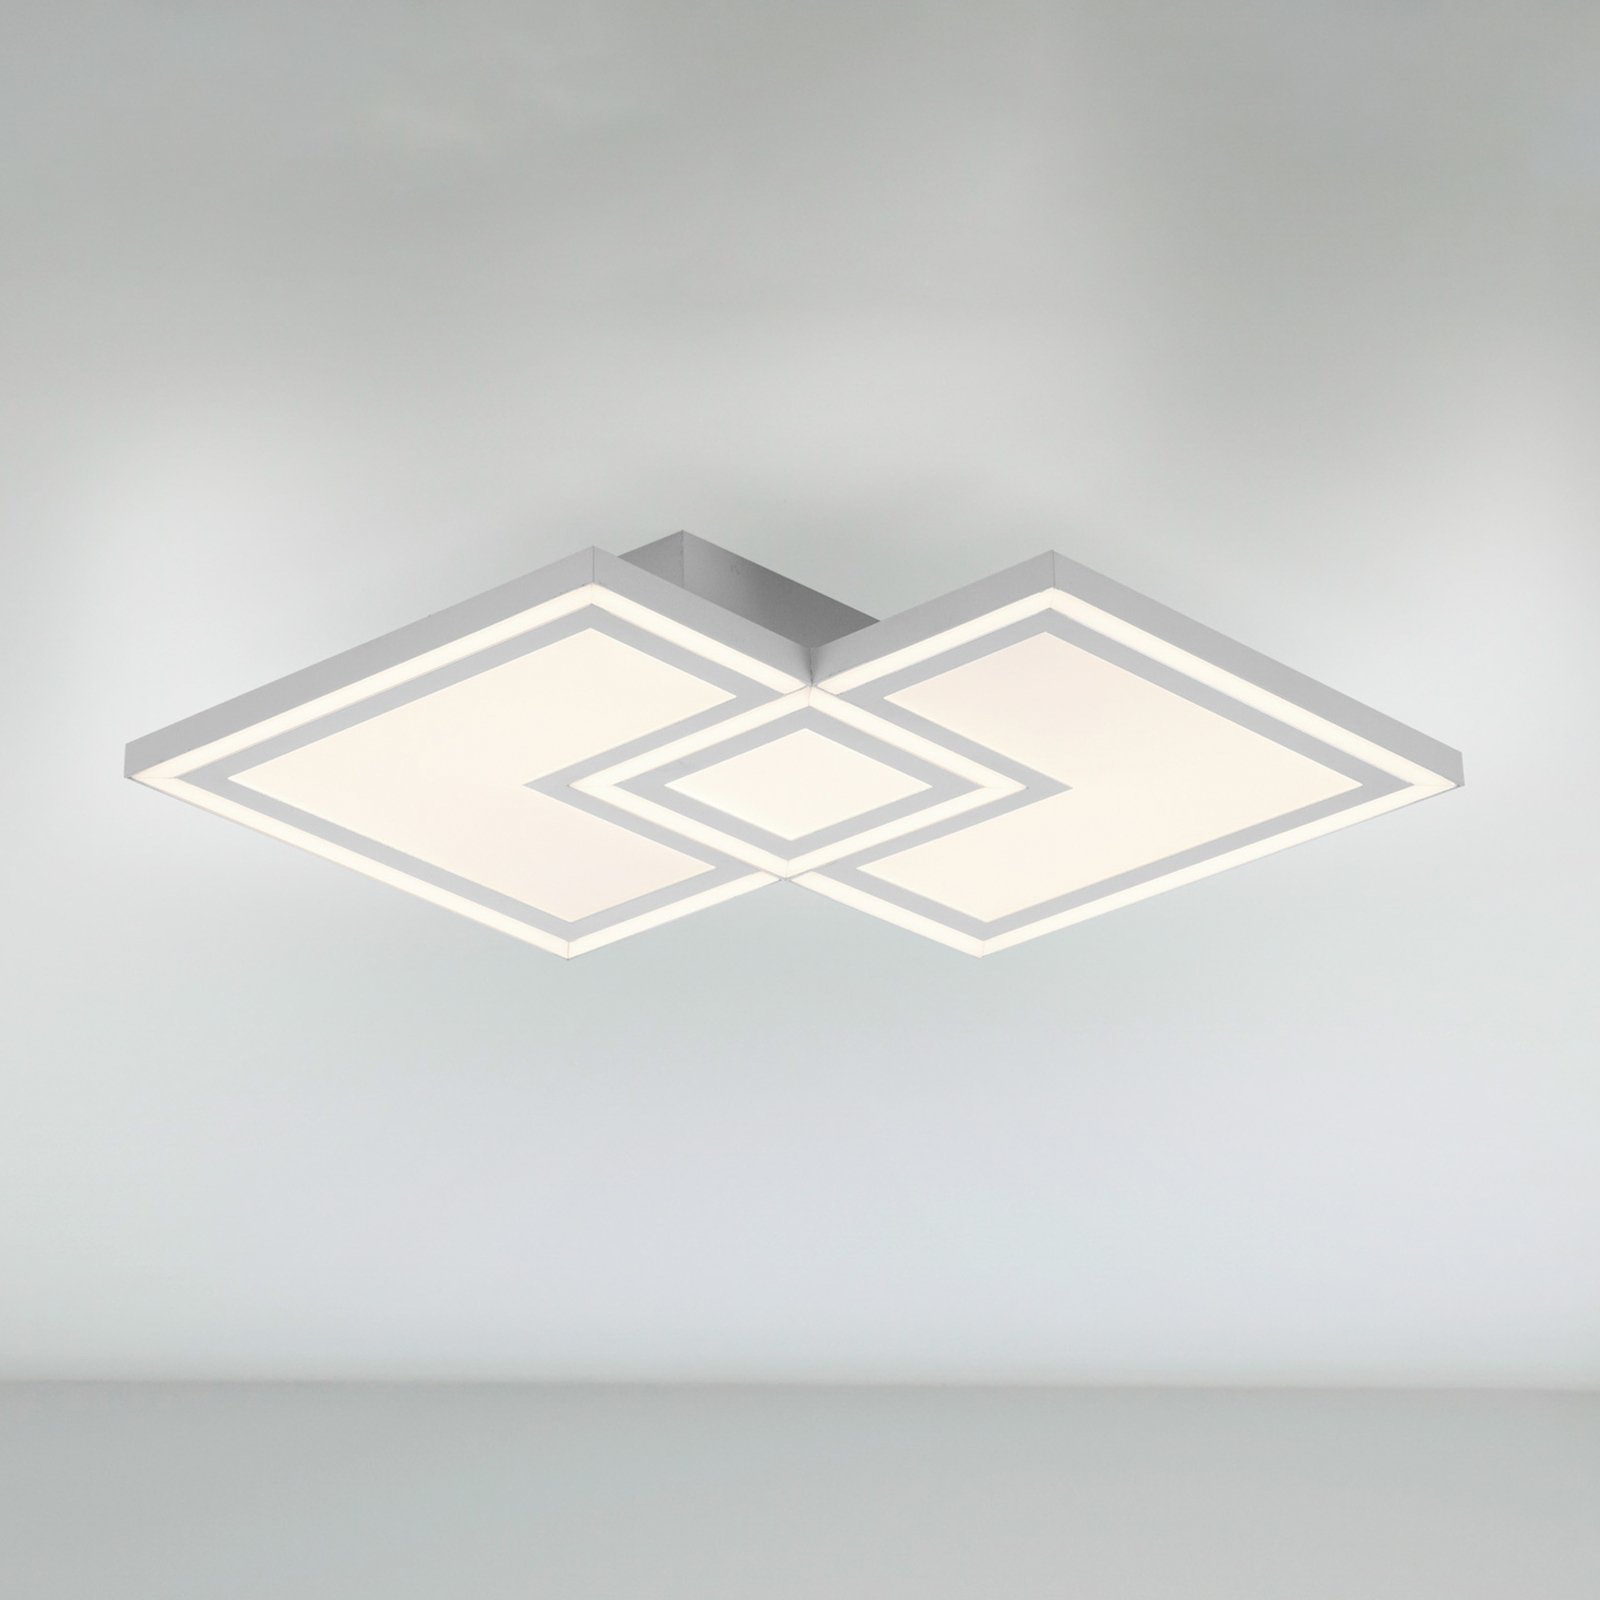 LED-kattovalaisin Bedging, modulaarinen valonlähde